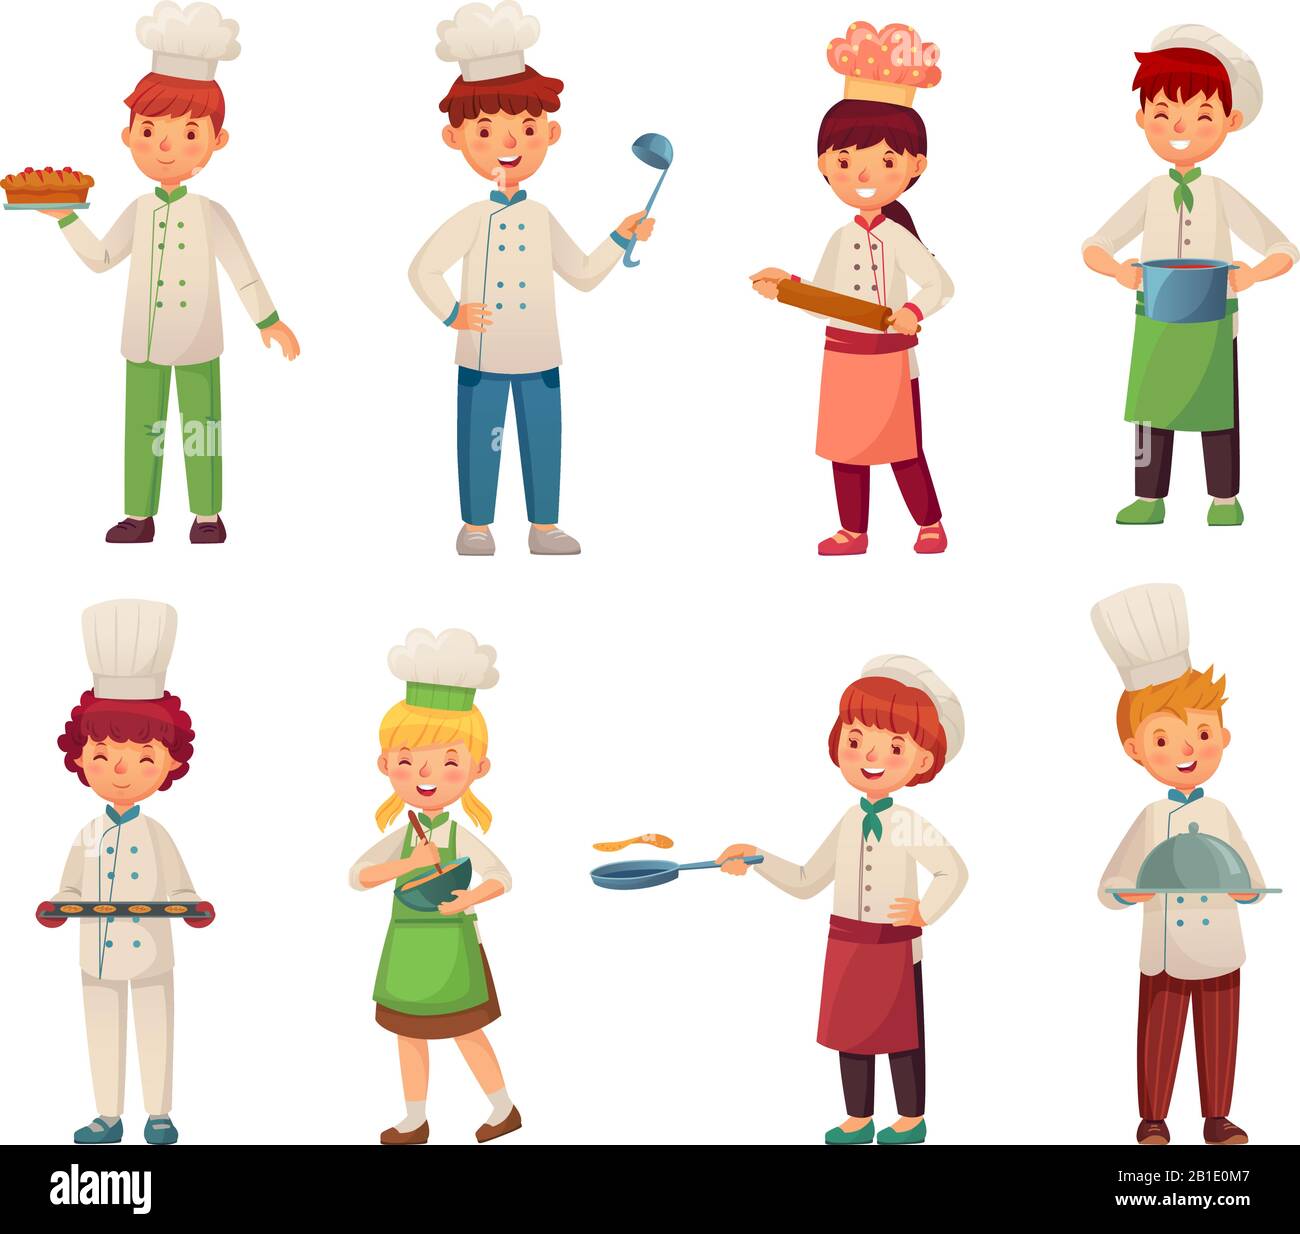 Cartoon Kochen Kinder. Der kleine Küchenchef kocht Lebensmittel, Kinderkoch und Küchenchefs für Gourmetkinder, Vektorgrafik-Set Stock Vektor